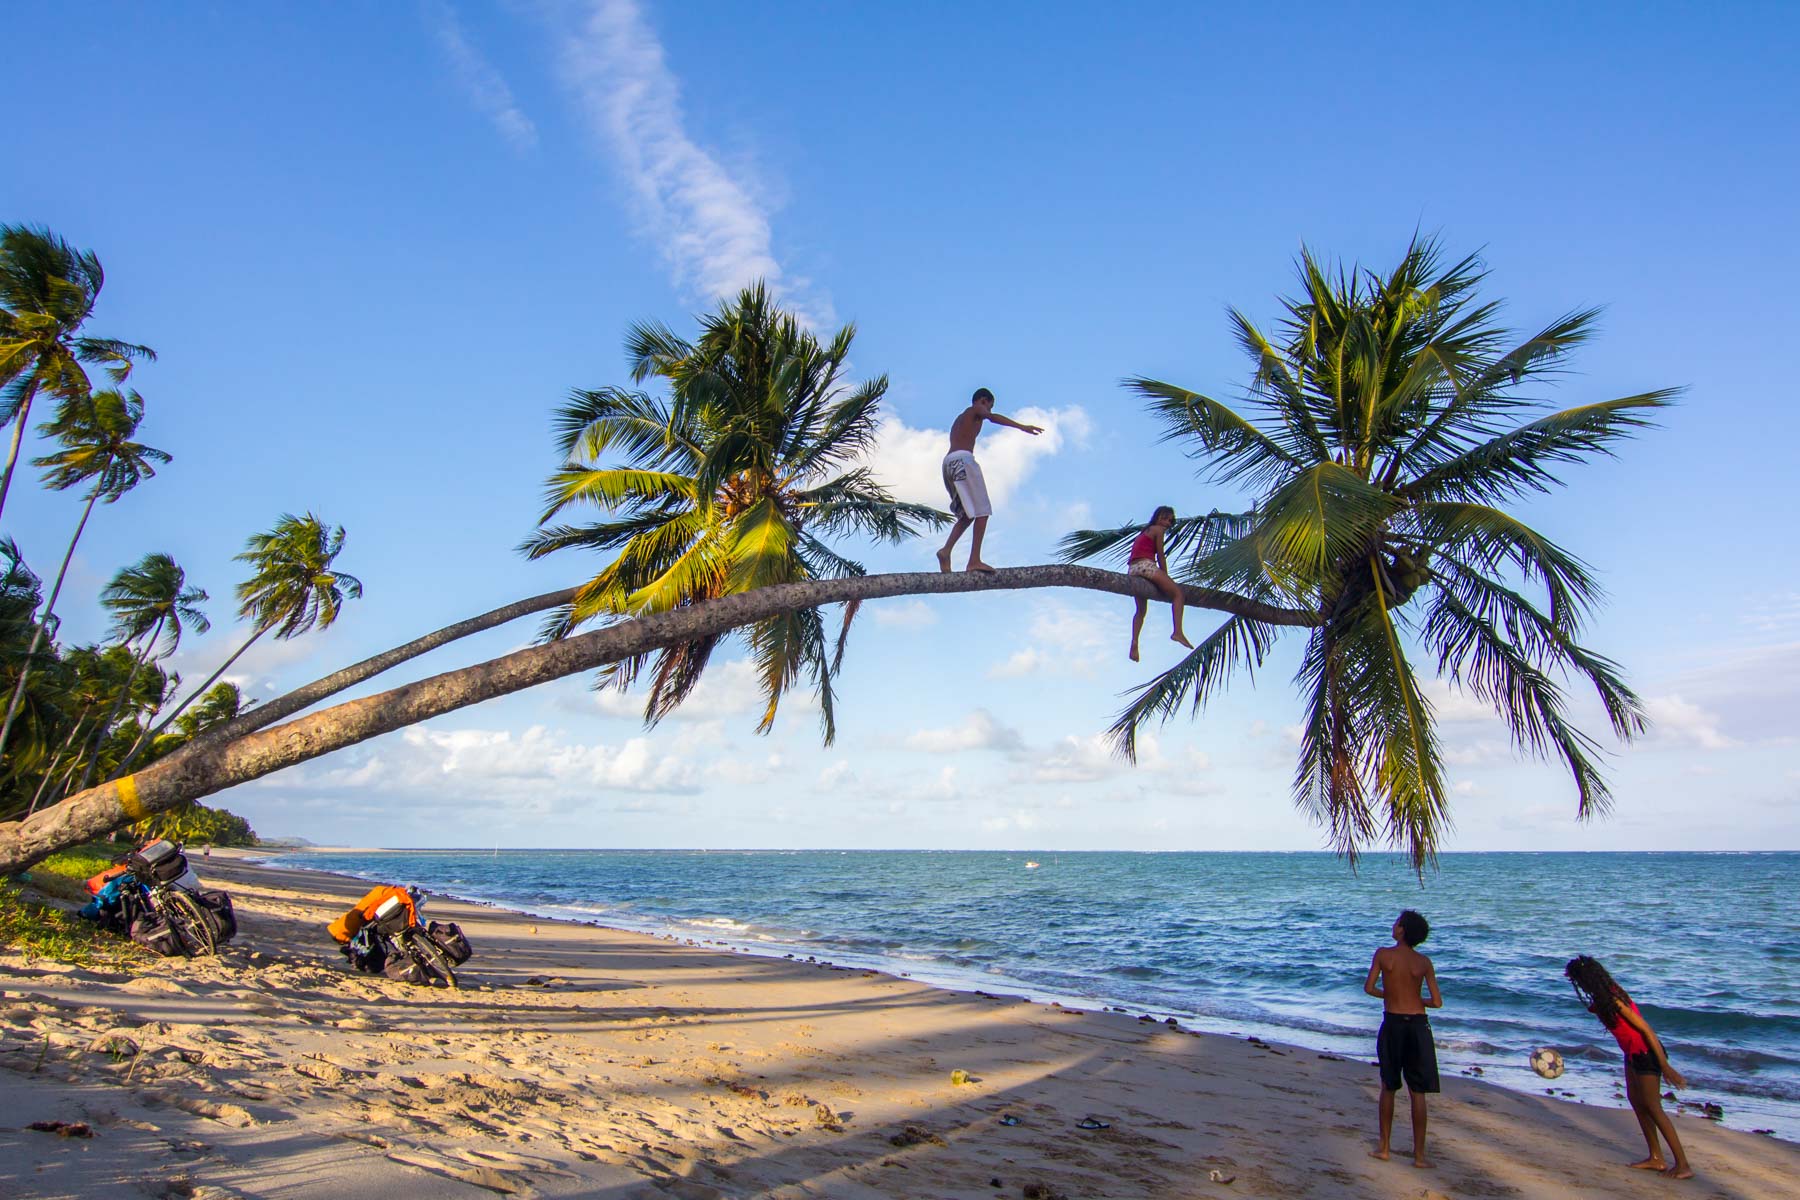 Deux enfants jouent au ballon sur une plage de sable tandis que deux autres grimpent sur le tronc d’un palmier penché au-dessus des vagues.